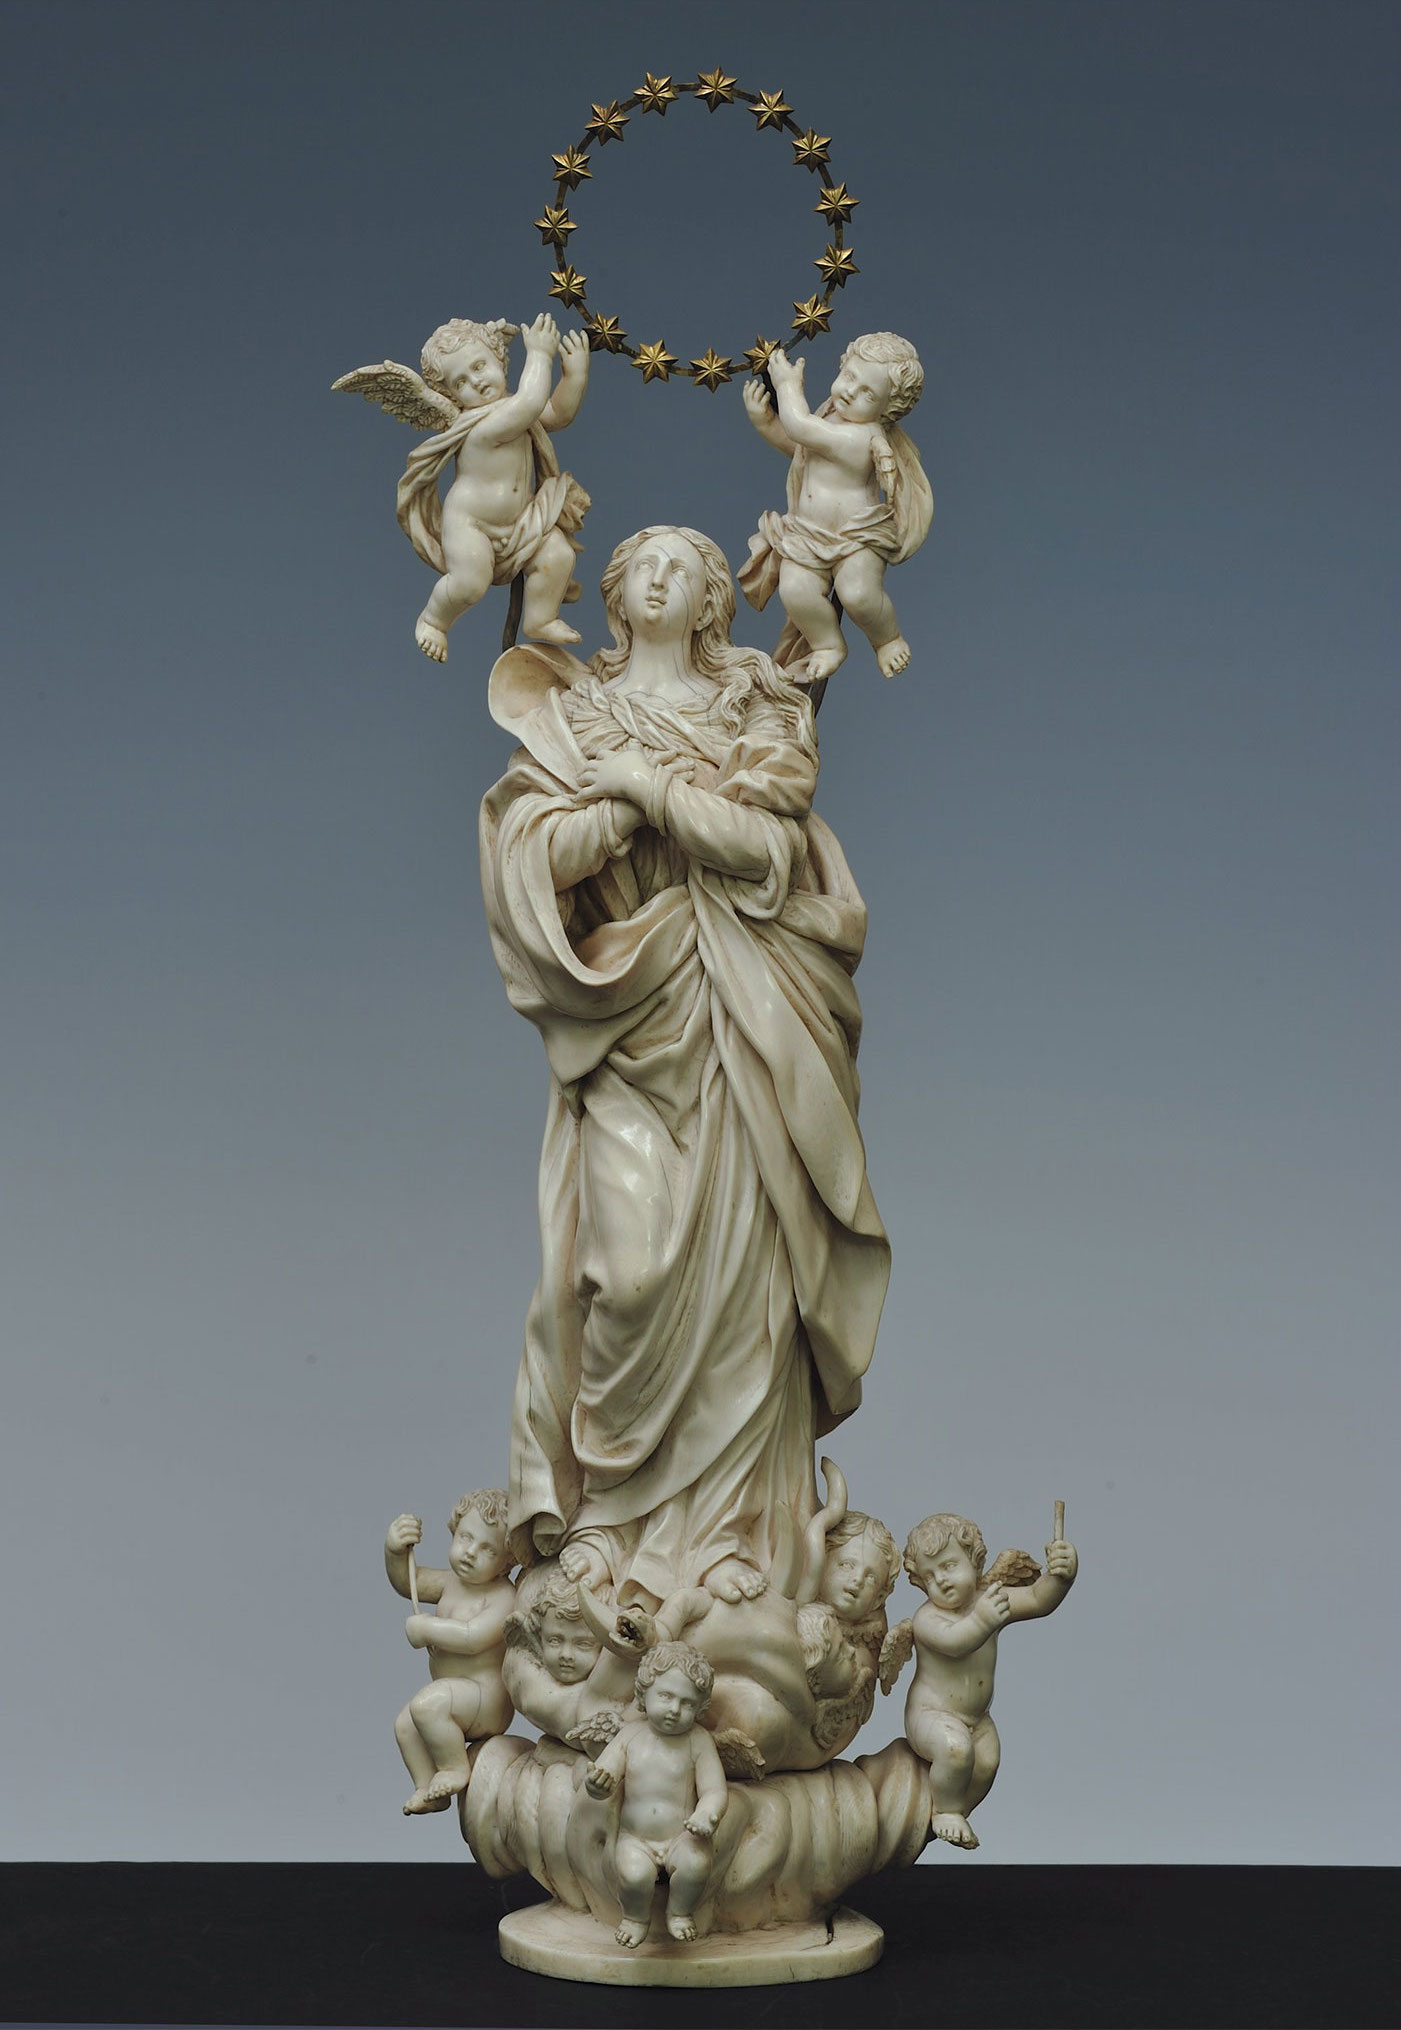 Claude Beissonat (dernier quart du XVIIe siècle), Immaculée Conception, vers 1680. Groupe sculpté en ivoire, 66,2 cm. Florence, Palazzo Pitti. © Palazzo Pitti